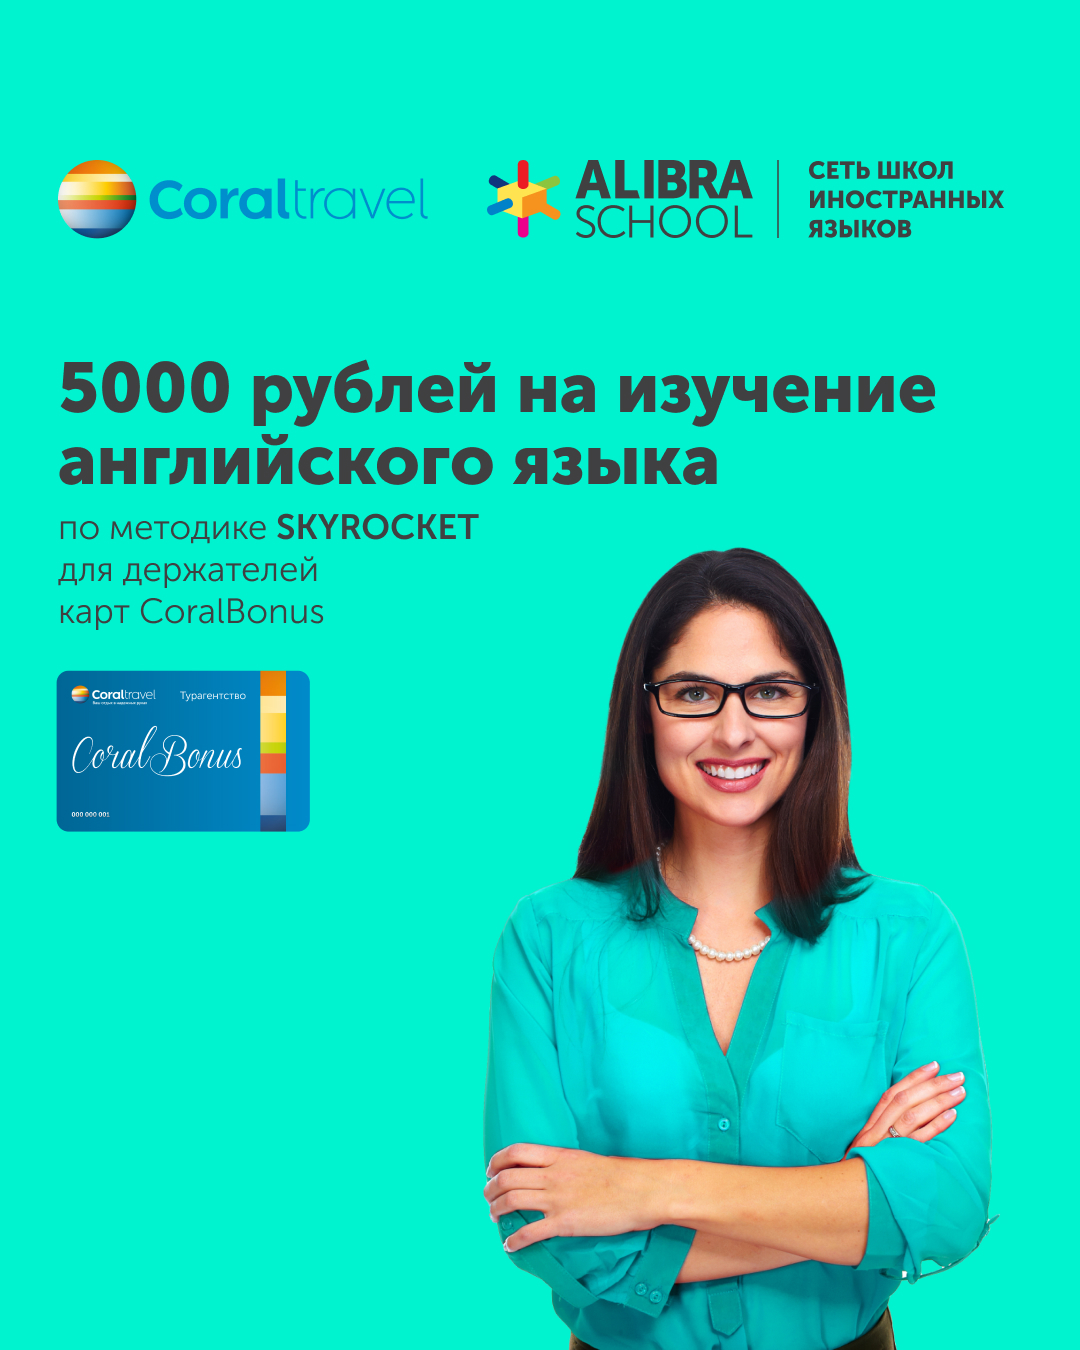 5 000 рублей на изучение английского языка в ALIBRA SCHOOL 